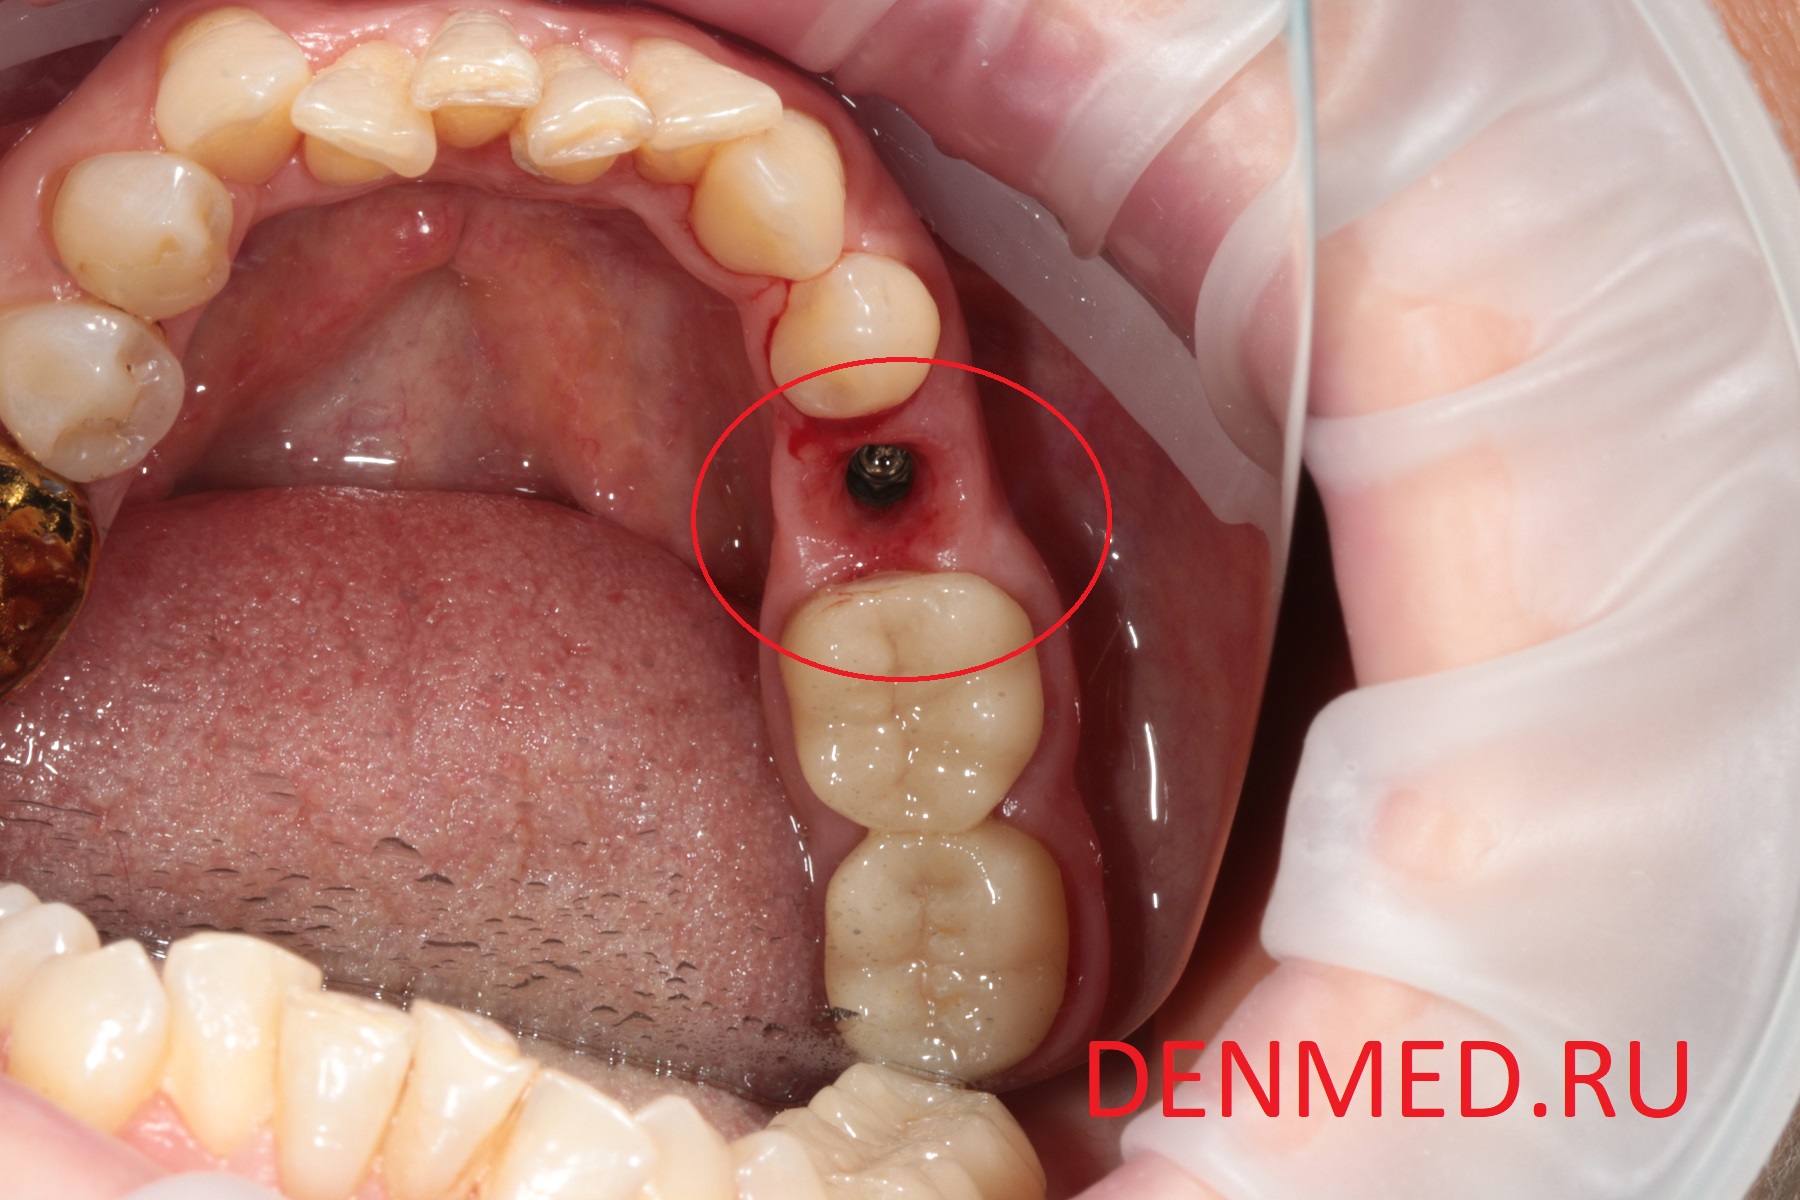 Вид установленного искусственного корня - зубной имплант, который уже готов к фиксации искусственной коронки